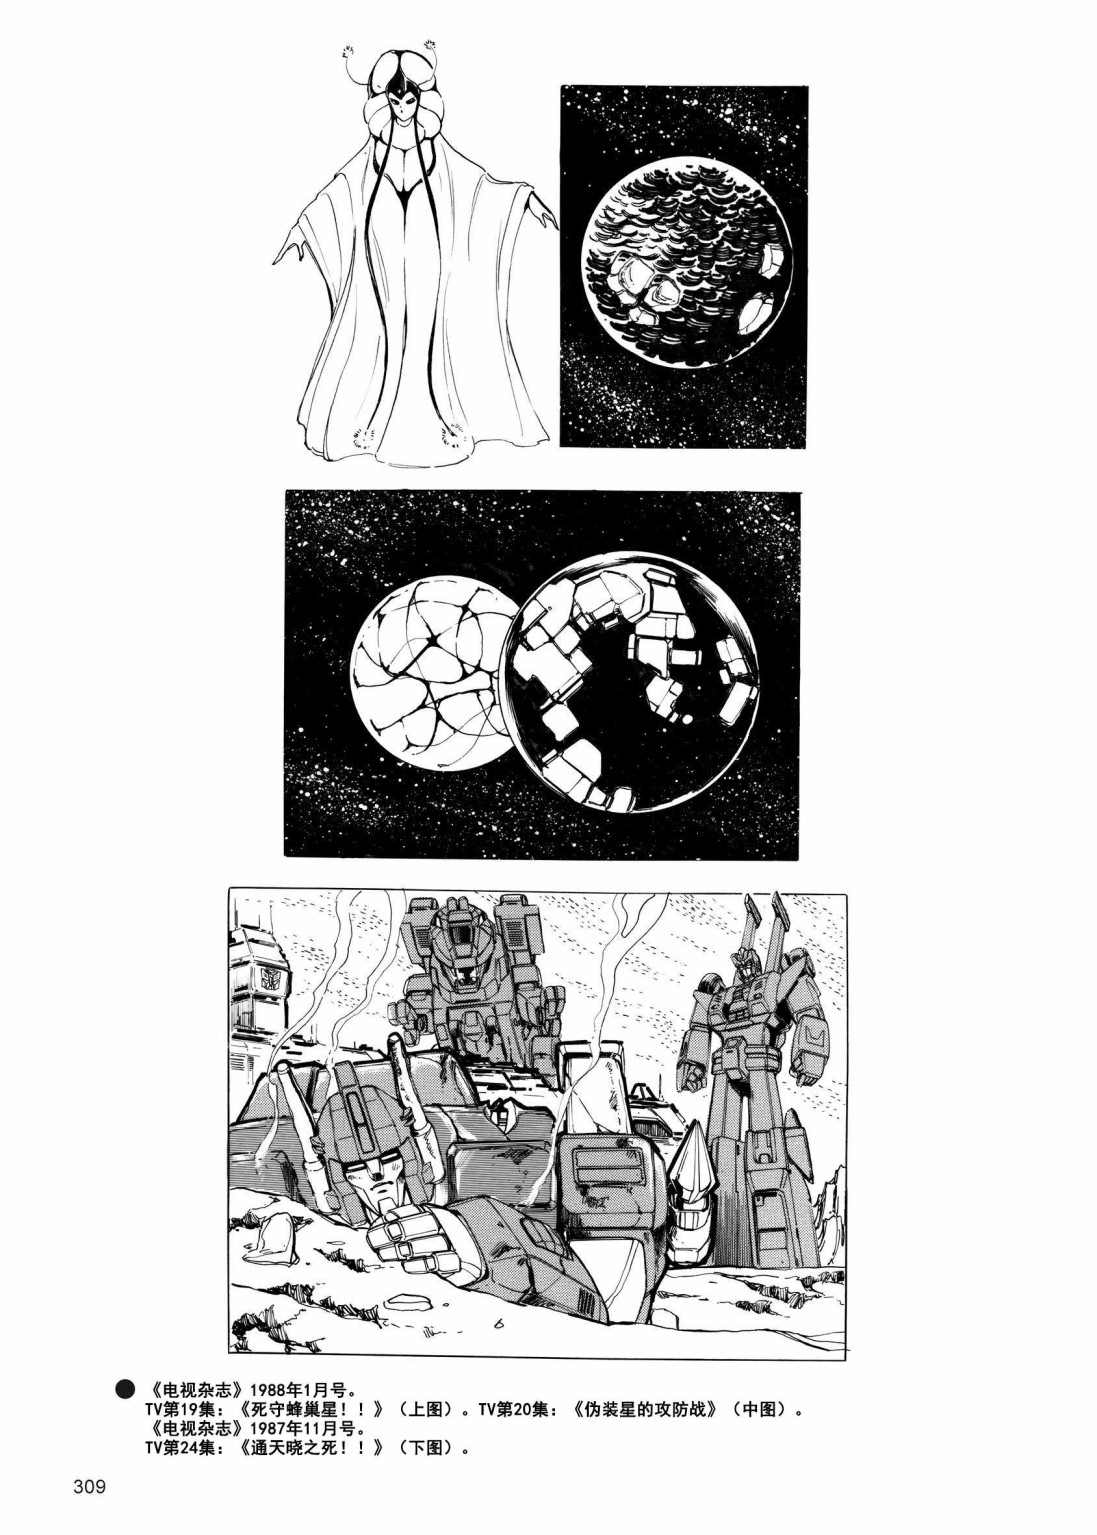 变形金刚日版G1杂志插画 - 变形金刚：头领战士 - 3